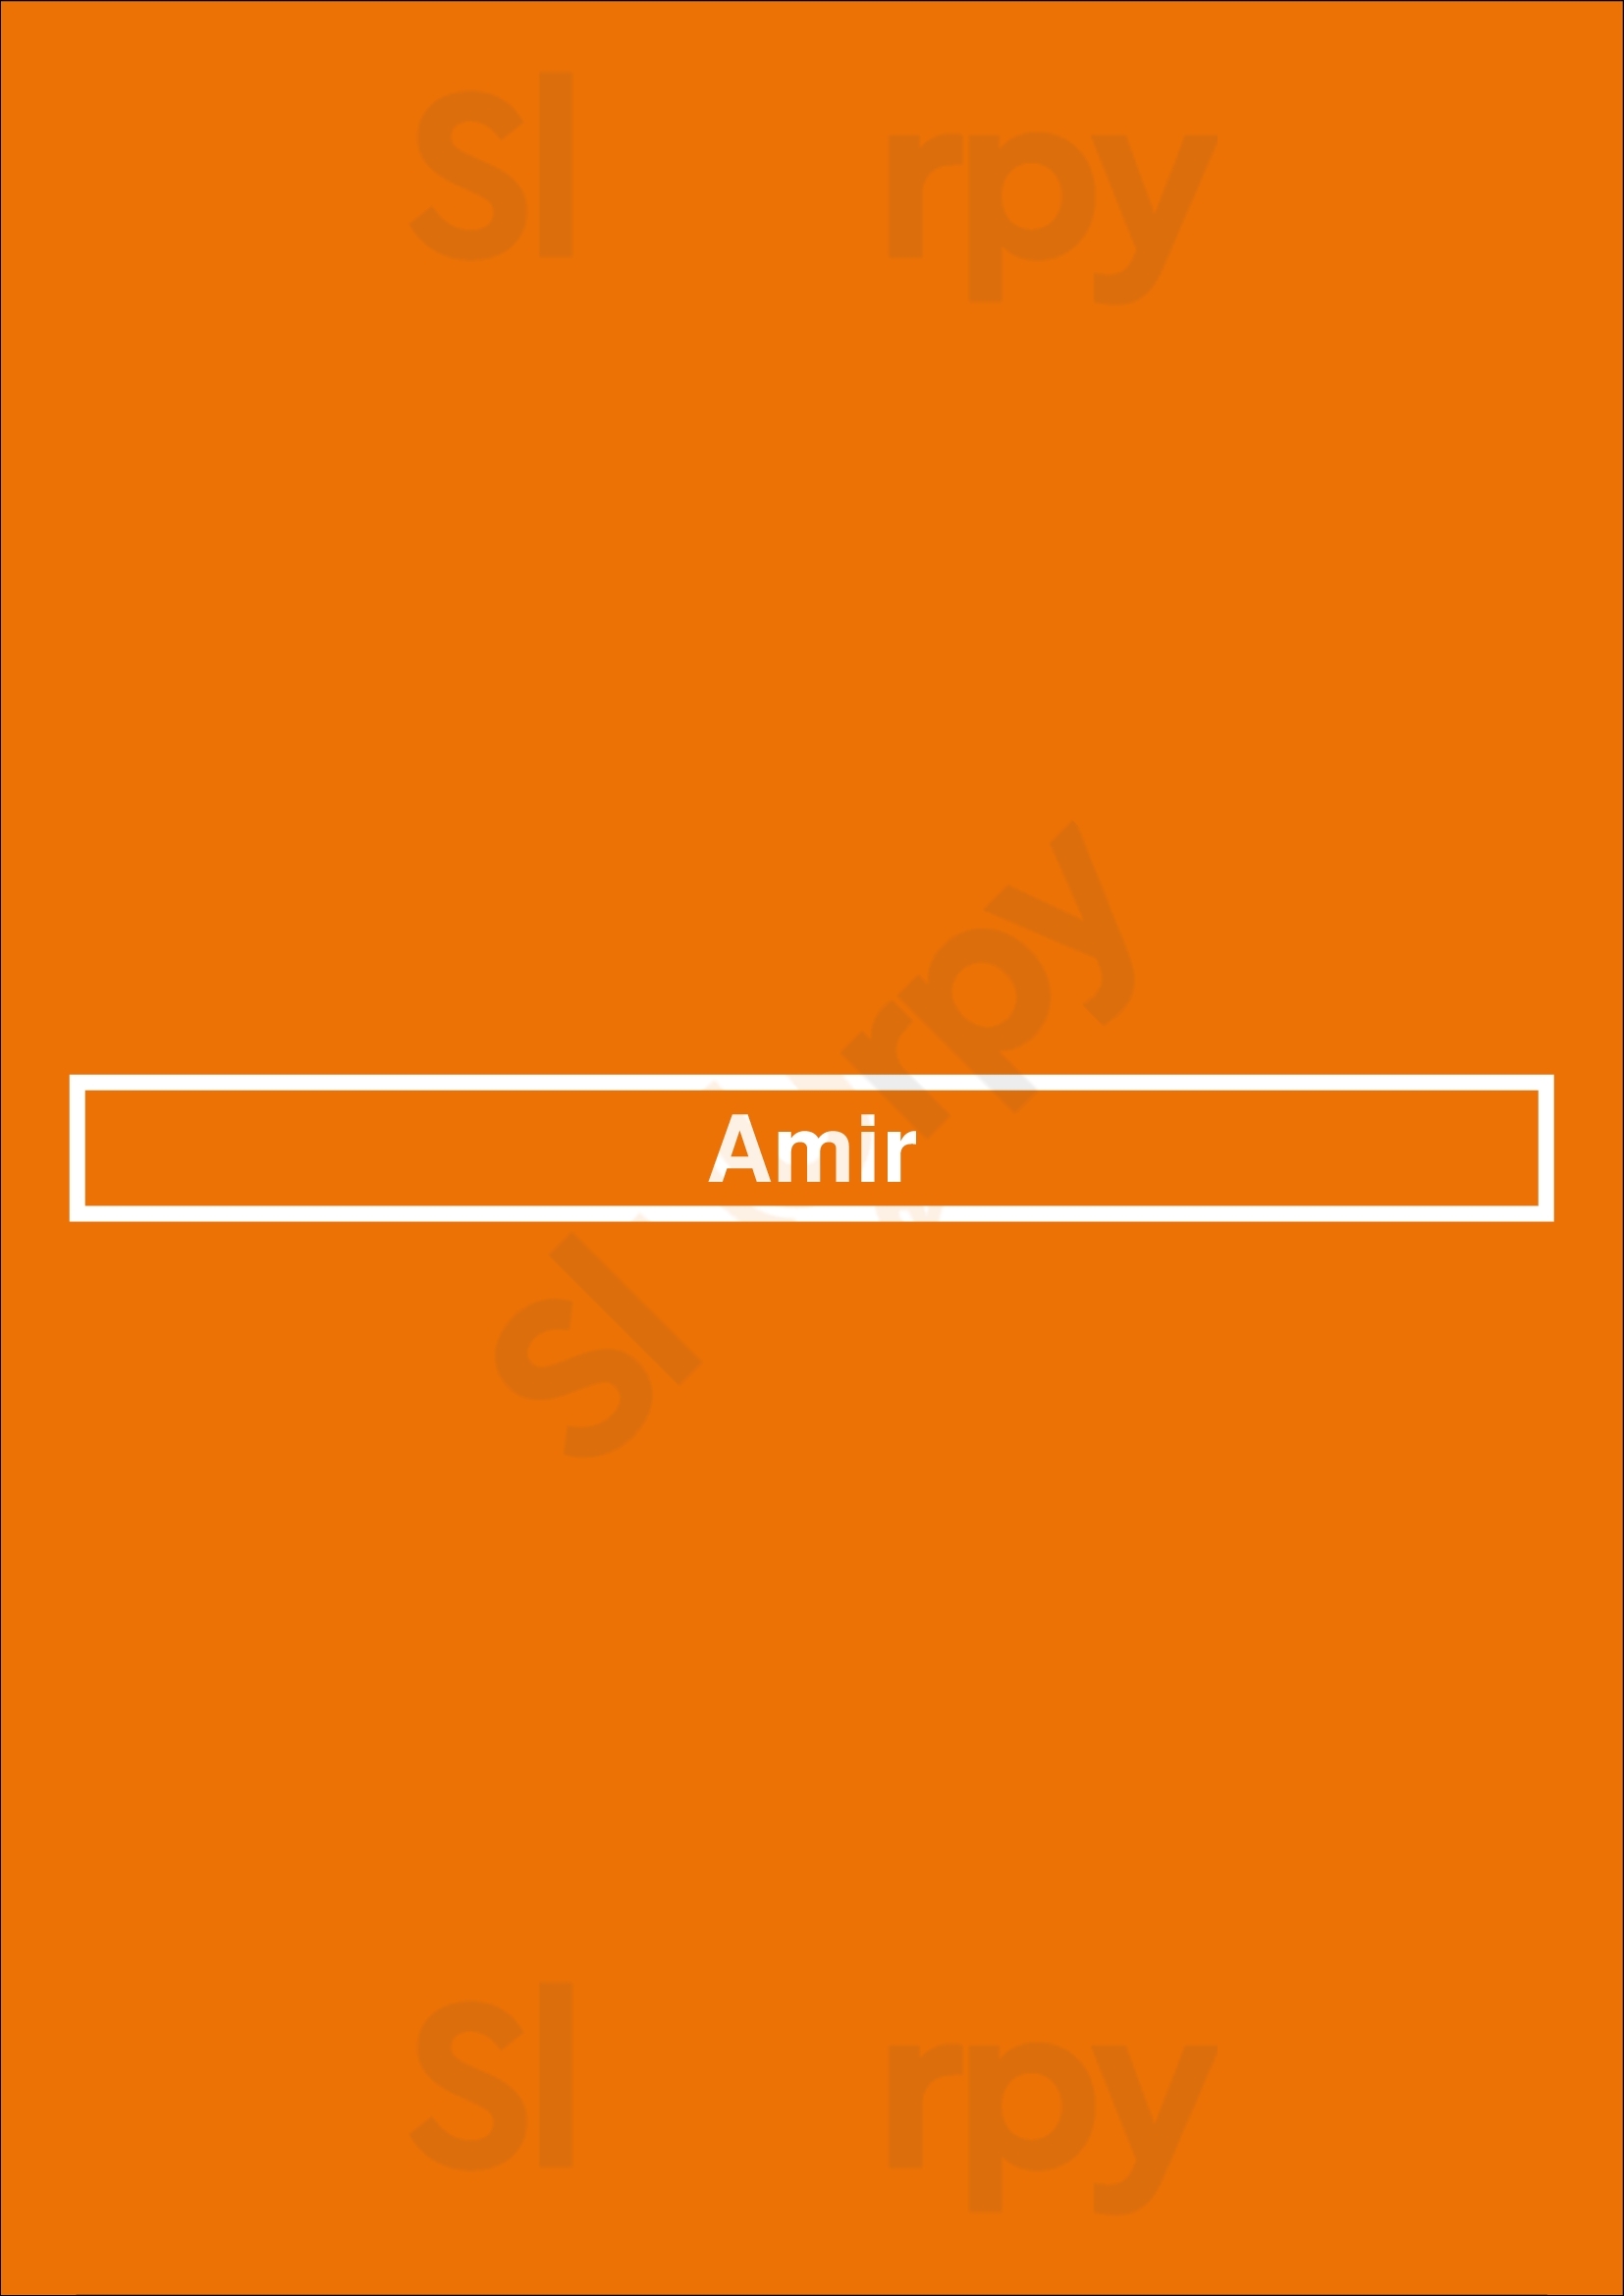 Amir Montreal Menu - 1